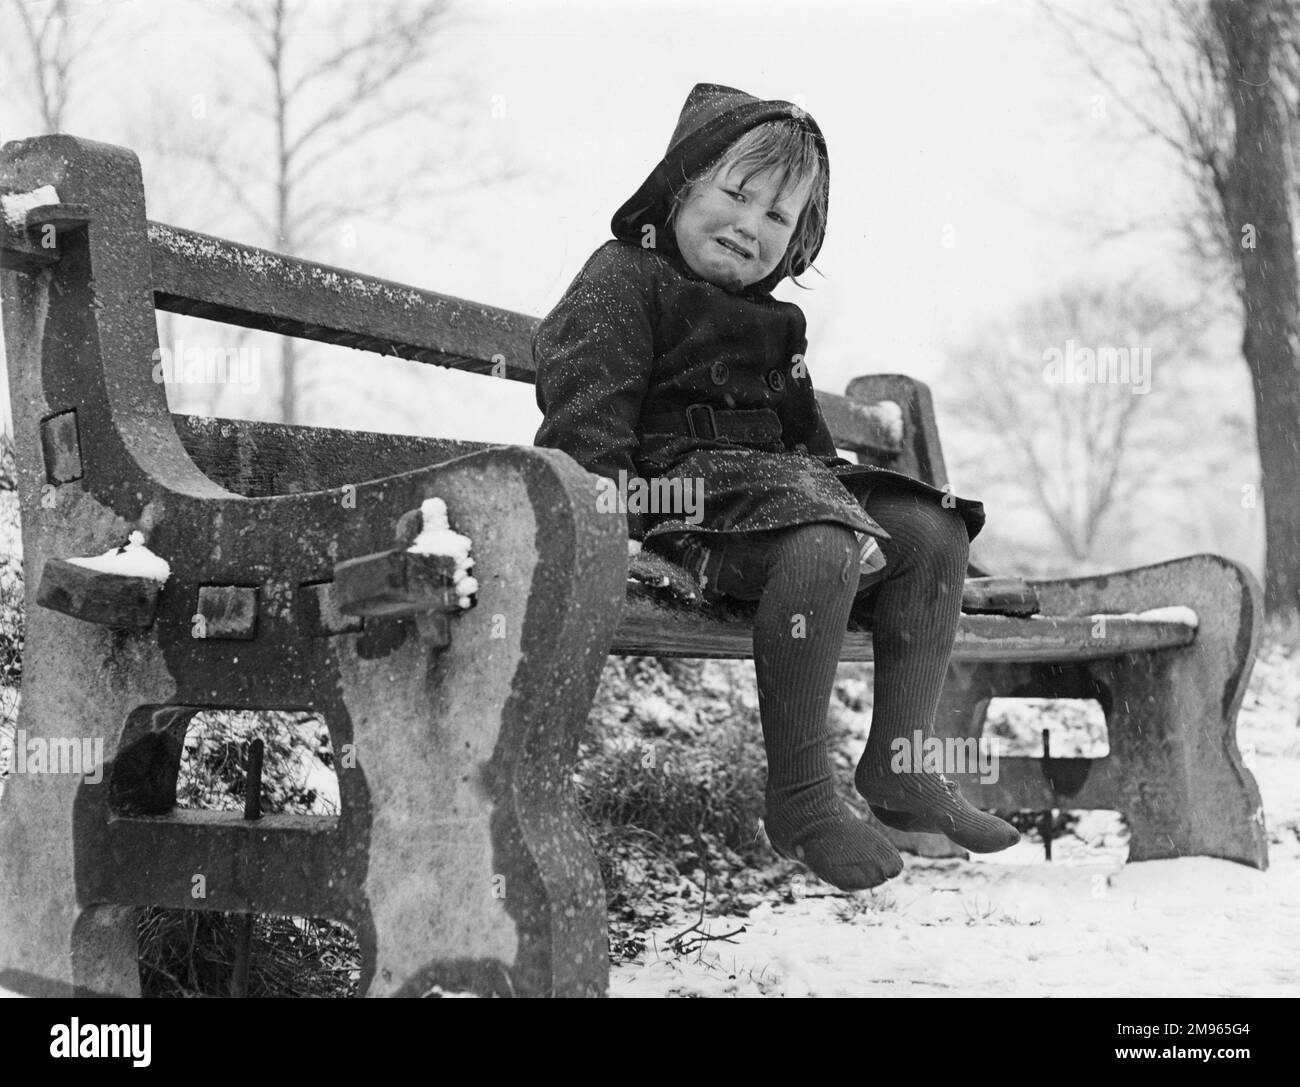 Ein kleines Mädchen, das auf einer Bank im Schnee sitzt und weint, weil sie eiskalte Zehen hat! Earlswood Lakes, Redhill Common, Surrey, England. Stockfoto